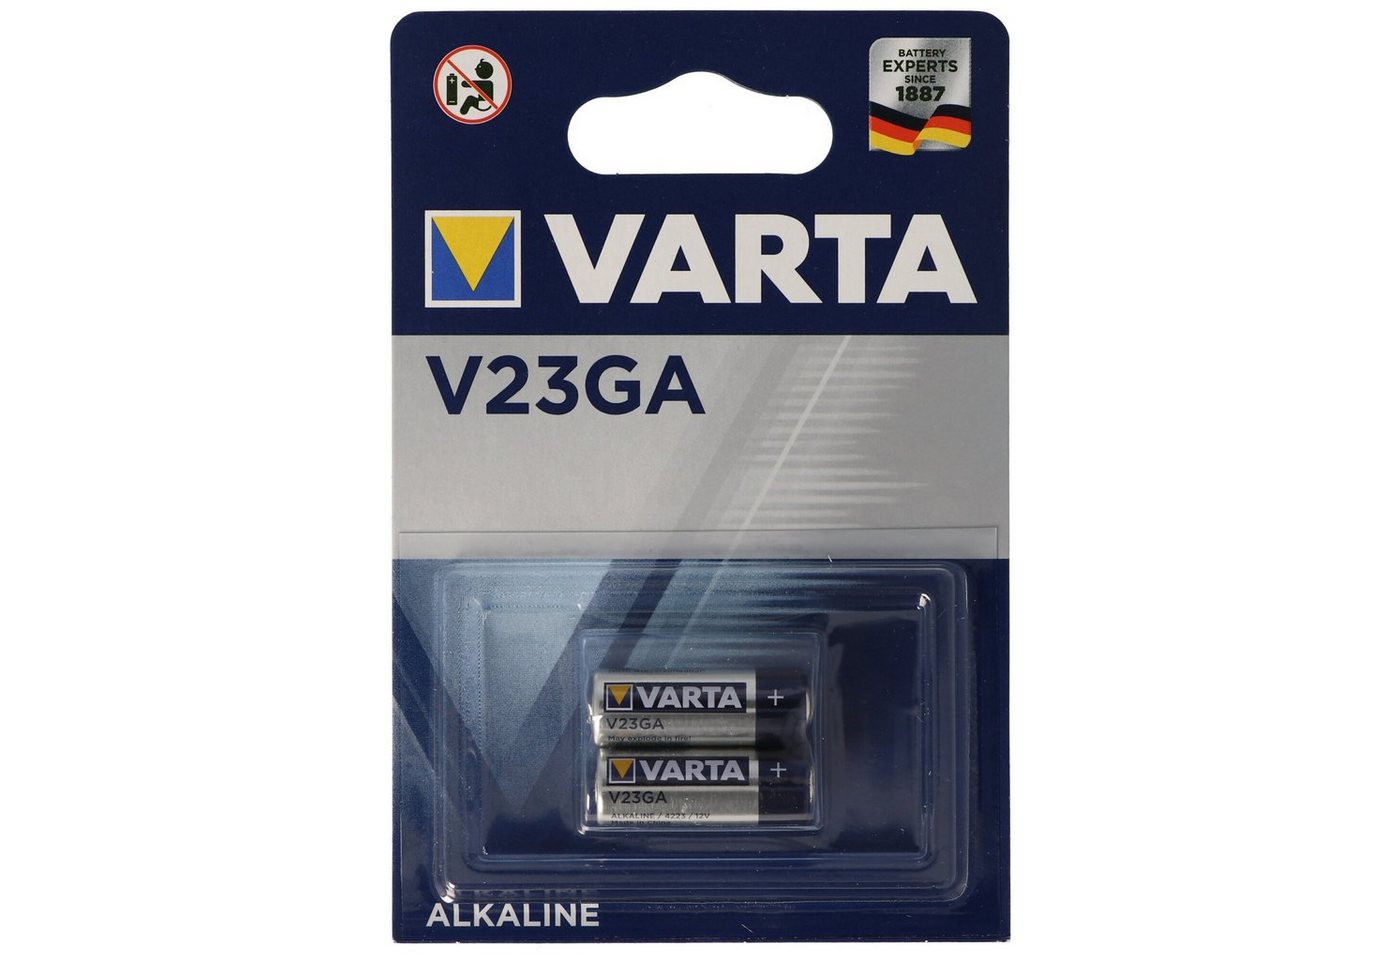 VARTA Varta V23GA Alkaline Batterie 2er Pack 4223 12V 738 765 Batterie, (12,0 V) von VARTA